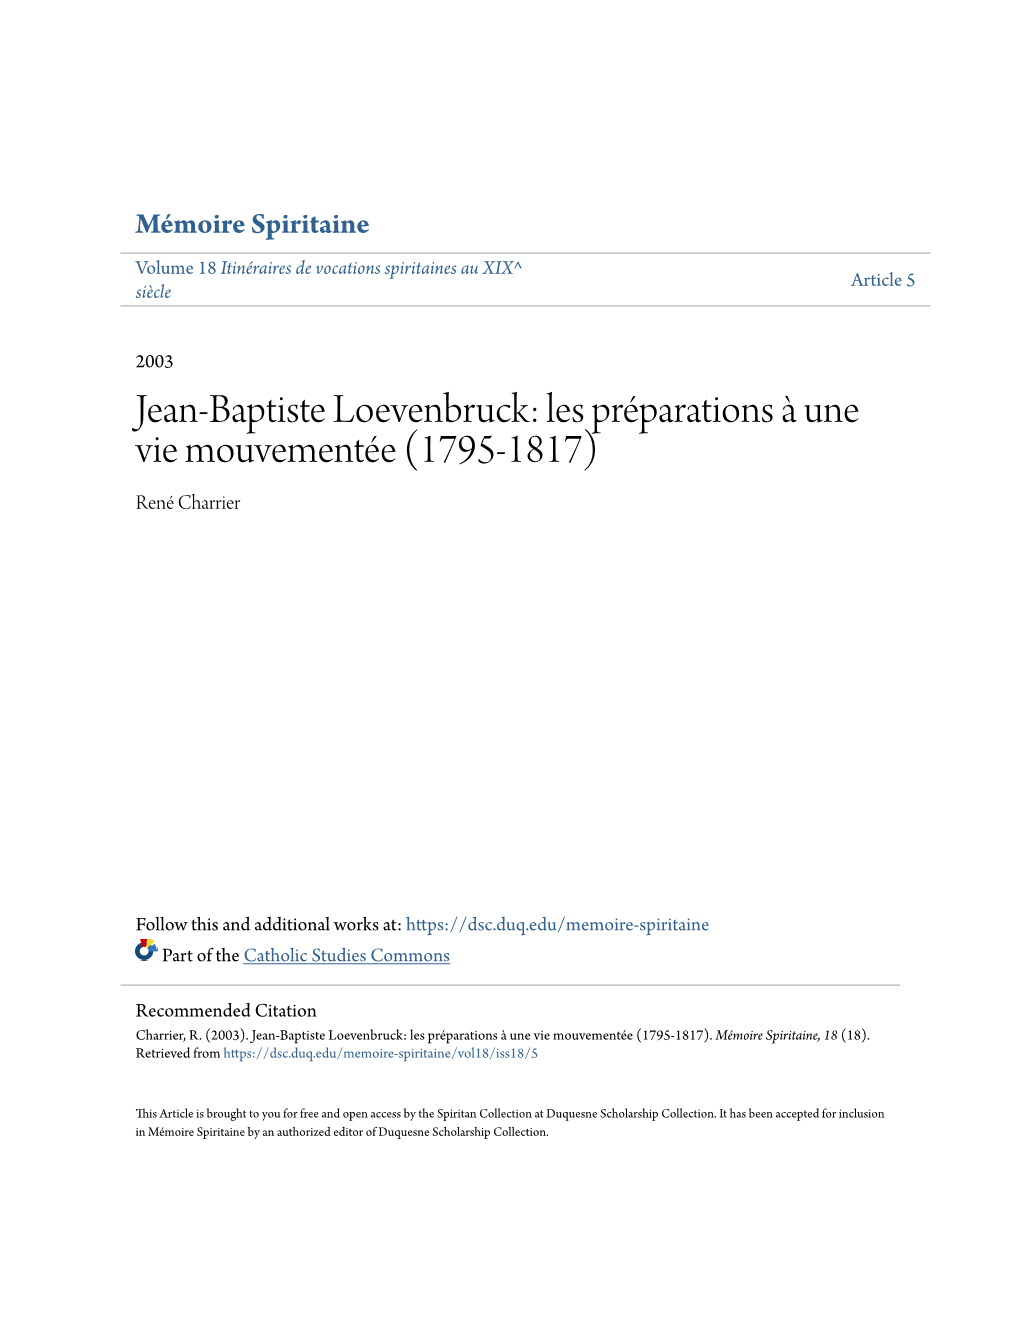 Jean-Baptiste Loevenbruck: Les Préparations À Une Vie Mouvementée (1795-1817) René Charrier